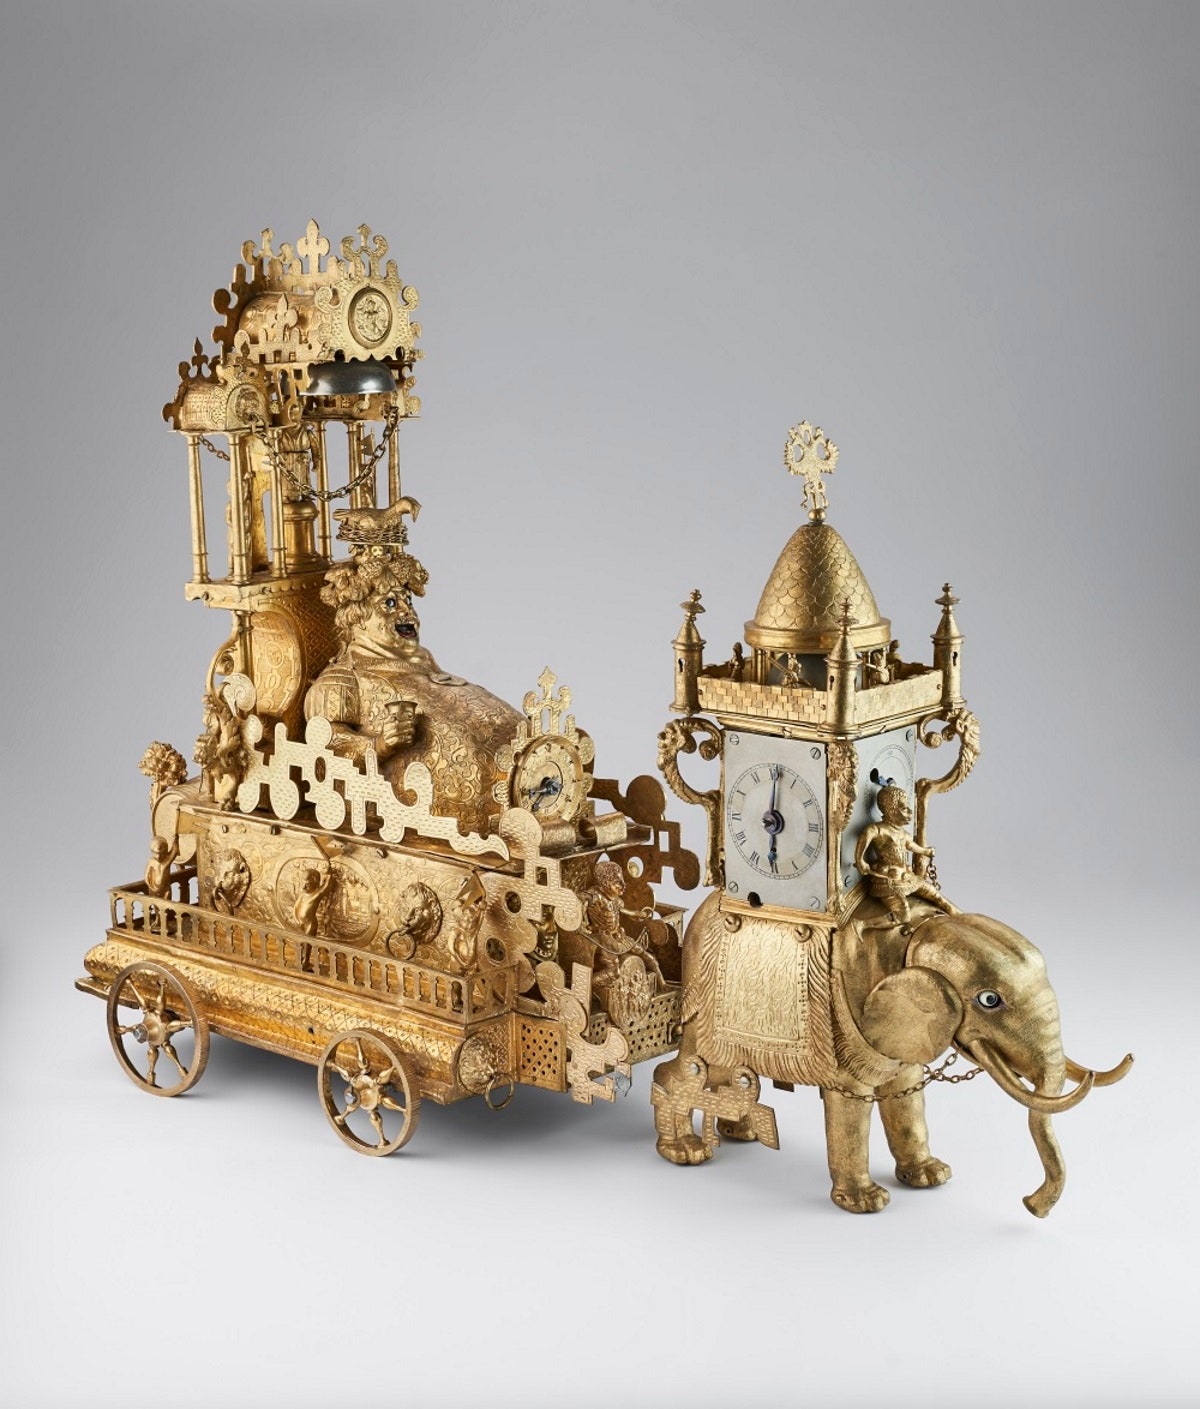 Часы “Бахус”. Германия Аугсбург конец XVI века. Бронза чеканка литье резьба. Музеи Московского Кремля.